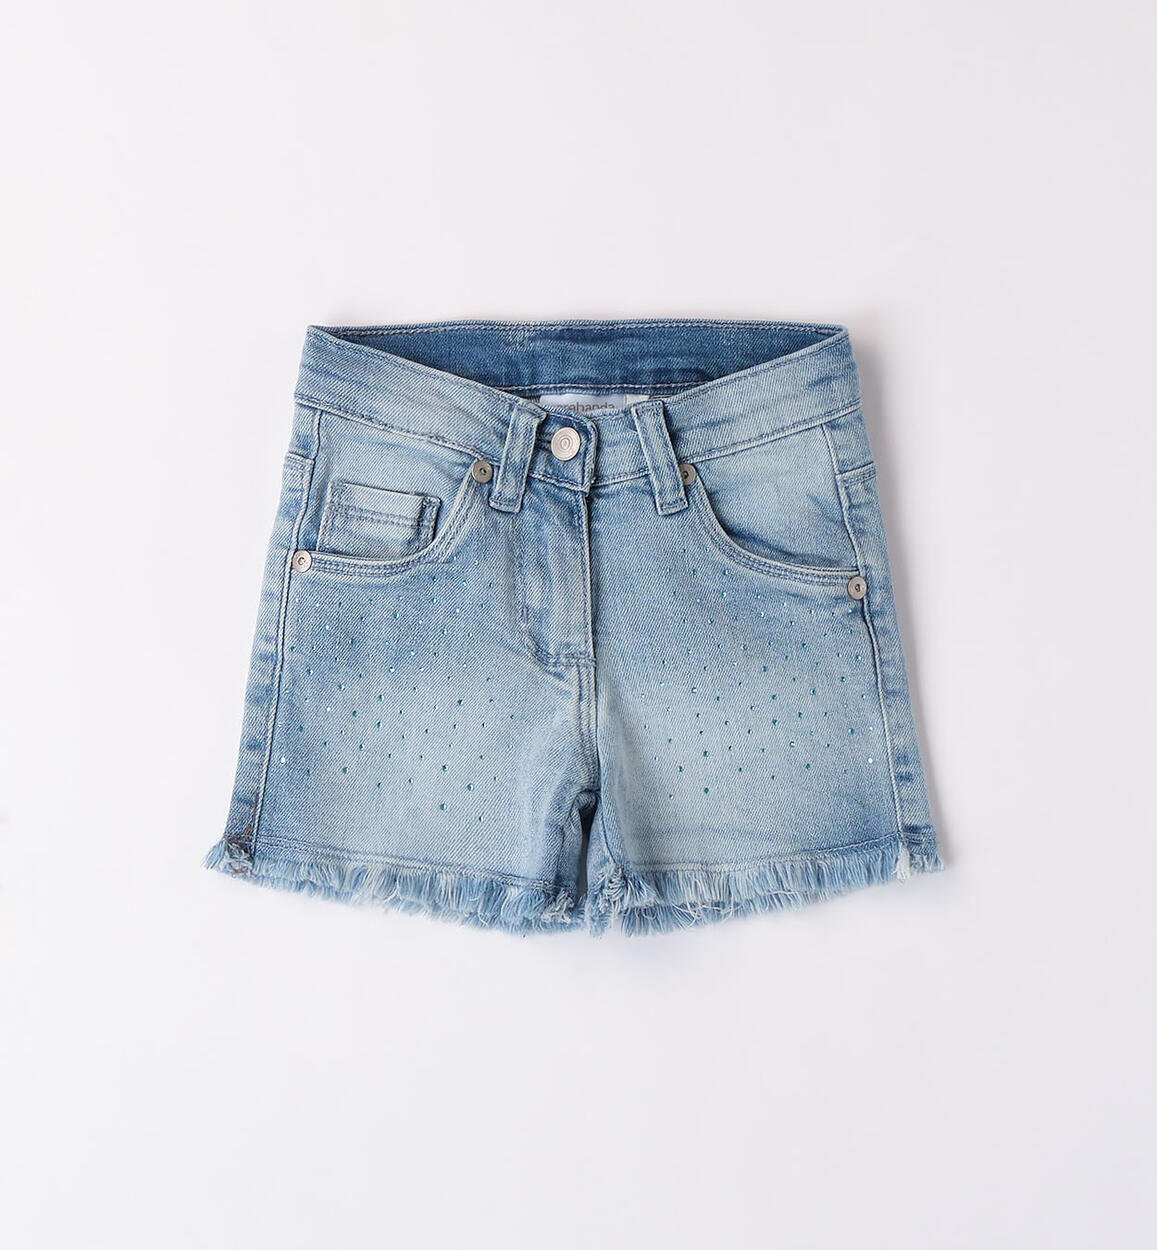 Shorts jeans con strass per Bimba 18mesi-7anni SARABANDA  8318 B809